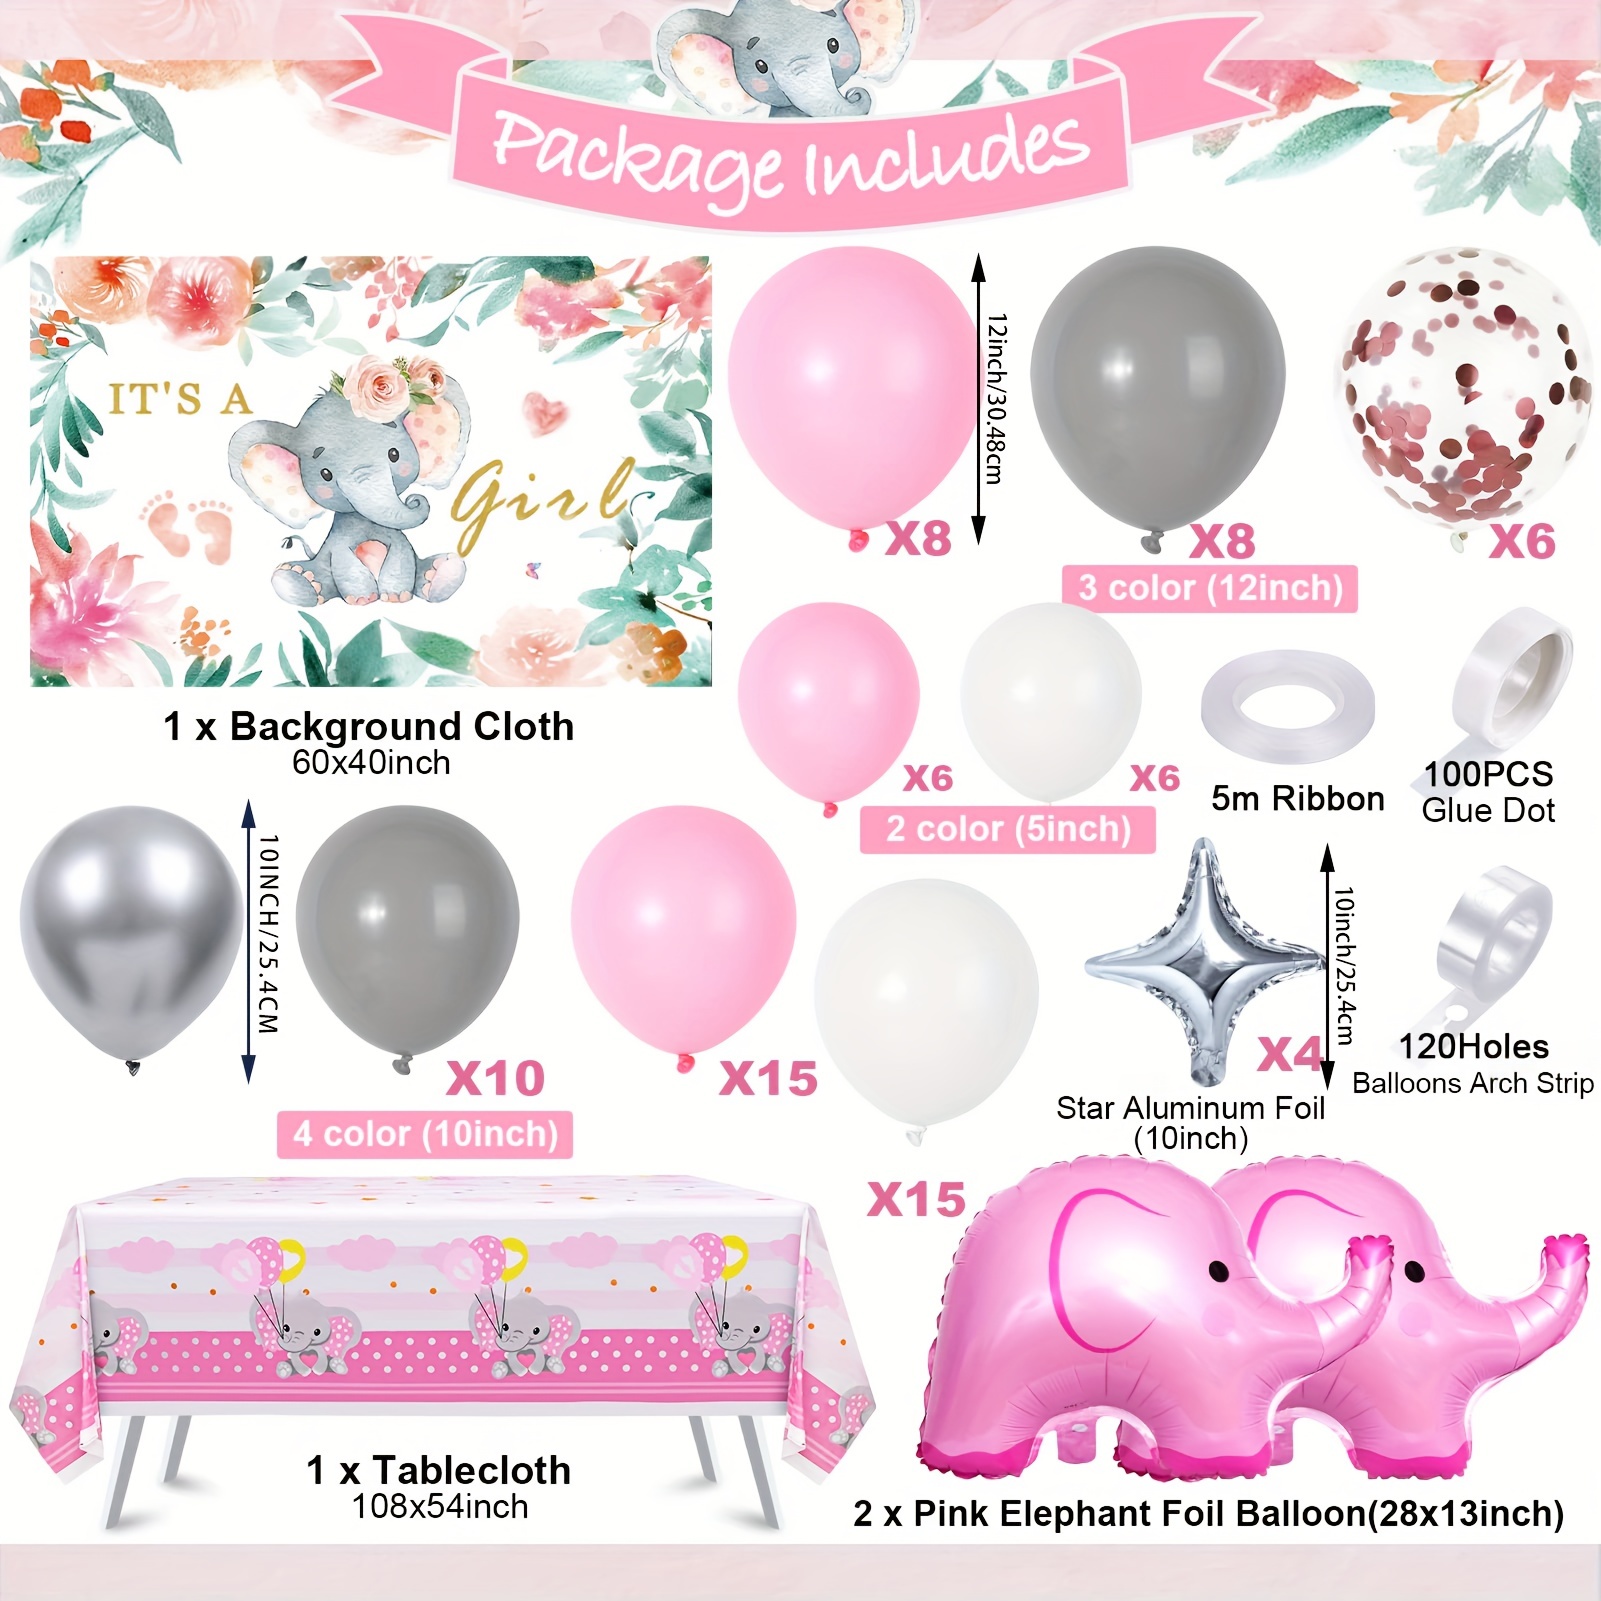 Decoración para babyshower/niña de elephante/decoracion con globos. 